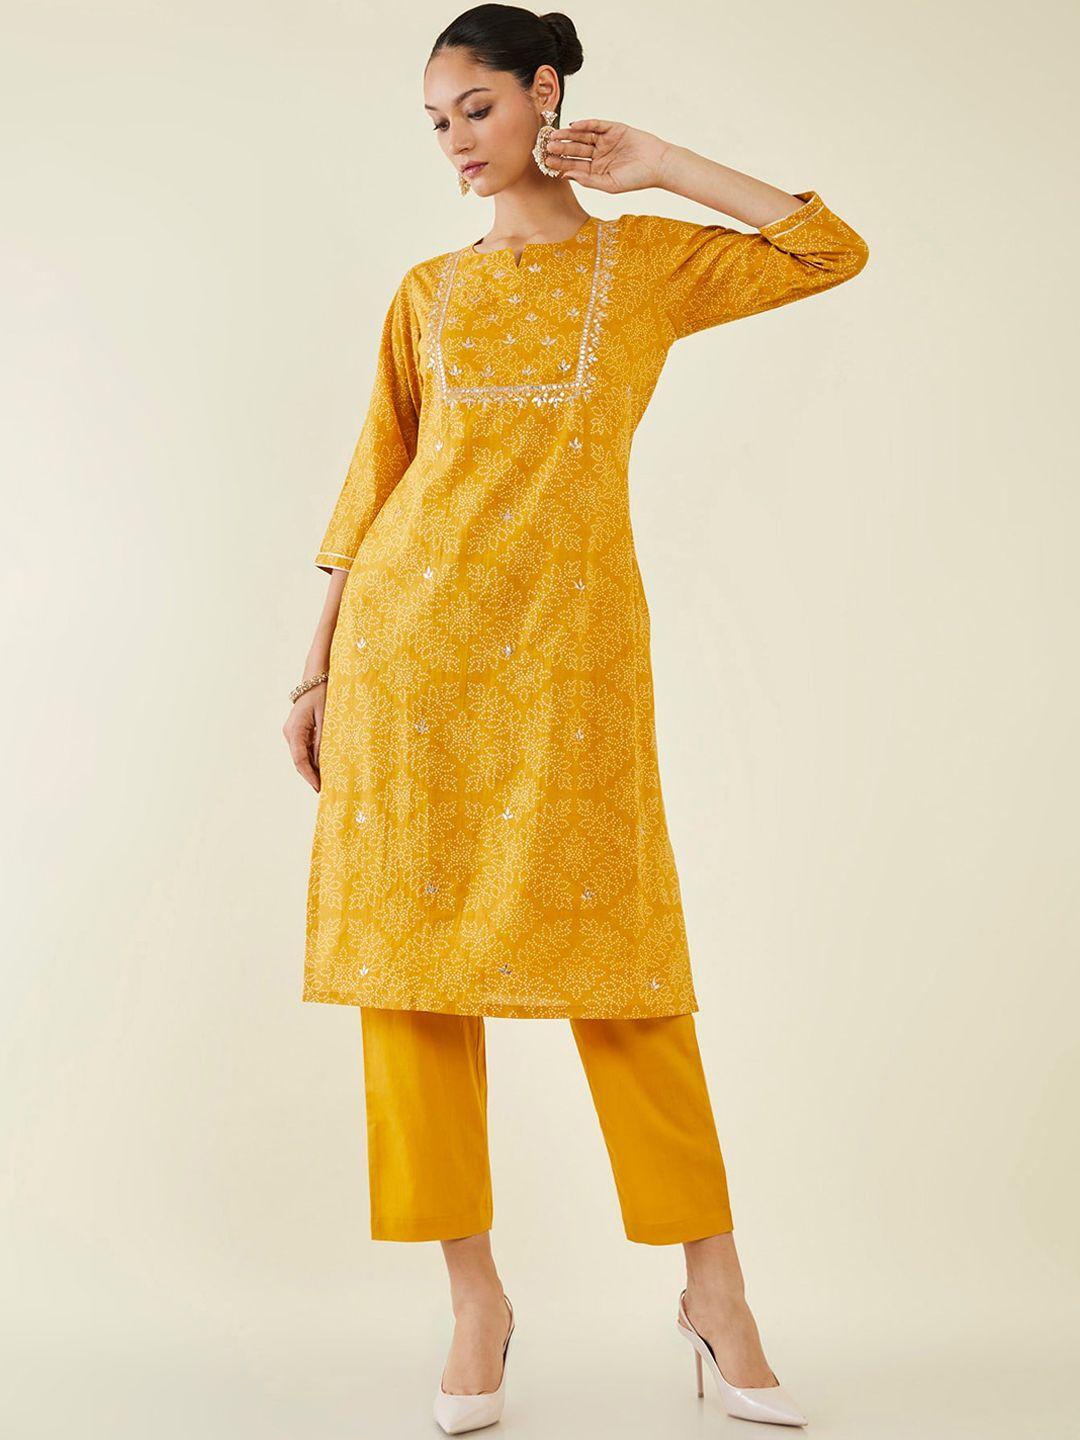 soch--notch-neck-bandhani-printed-gotta-patti-pure-cotton-kurta-with-trousers